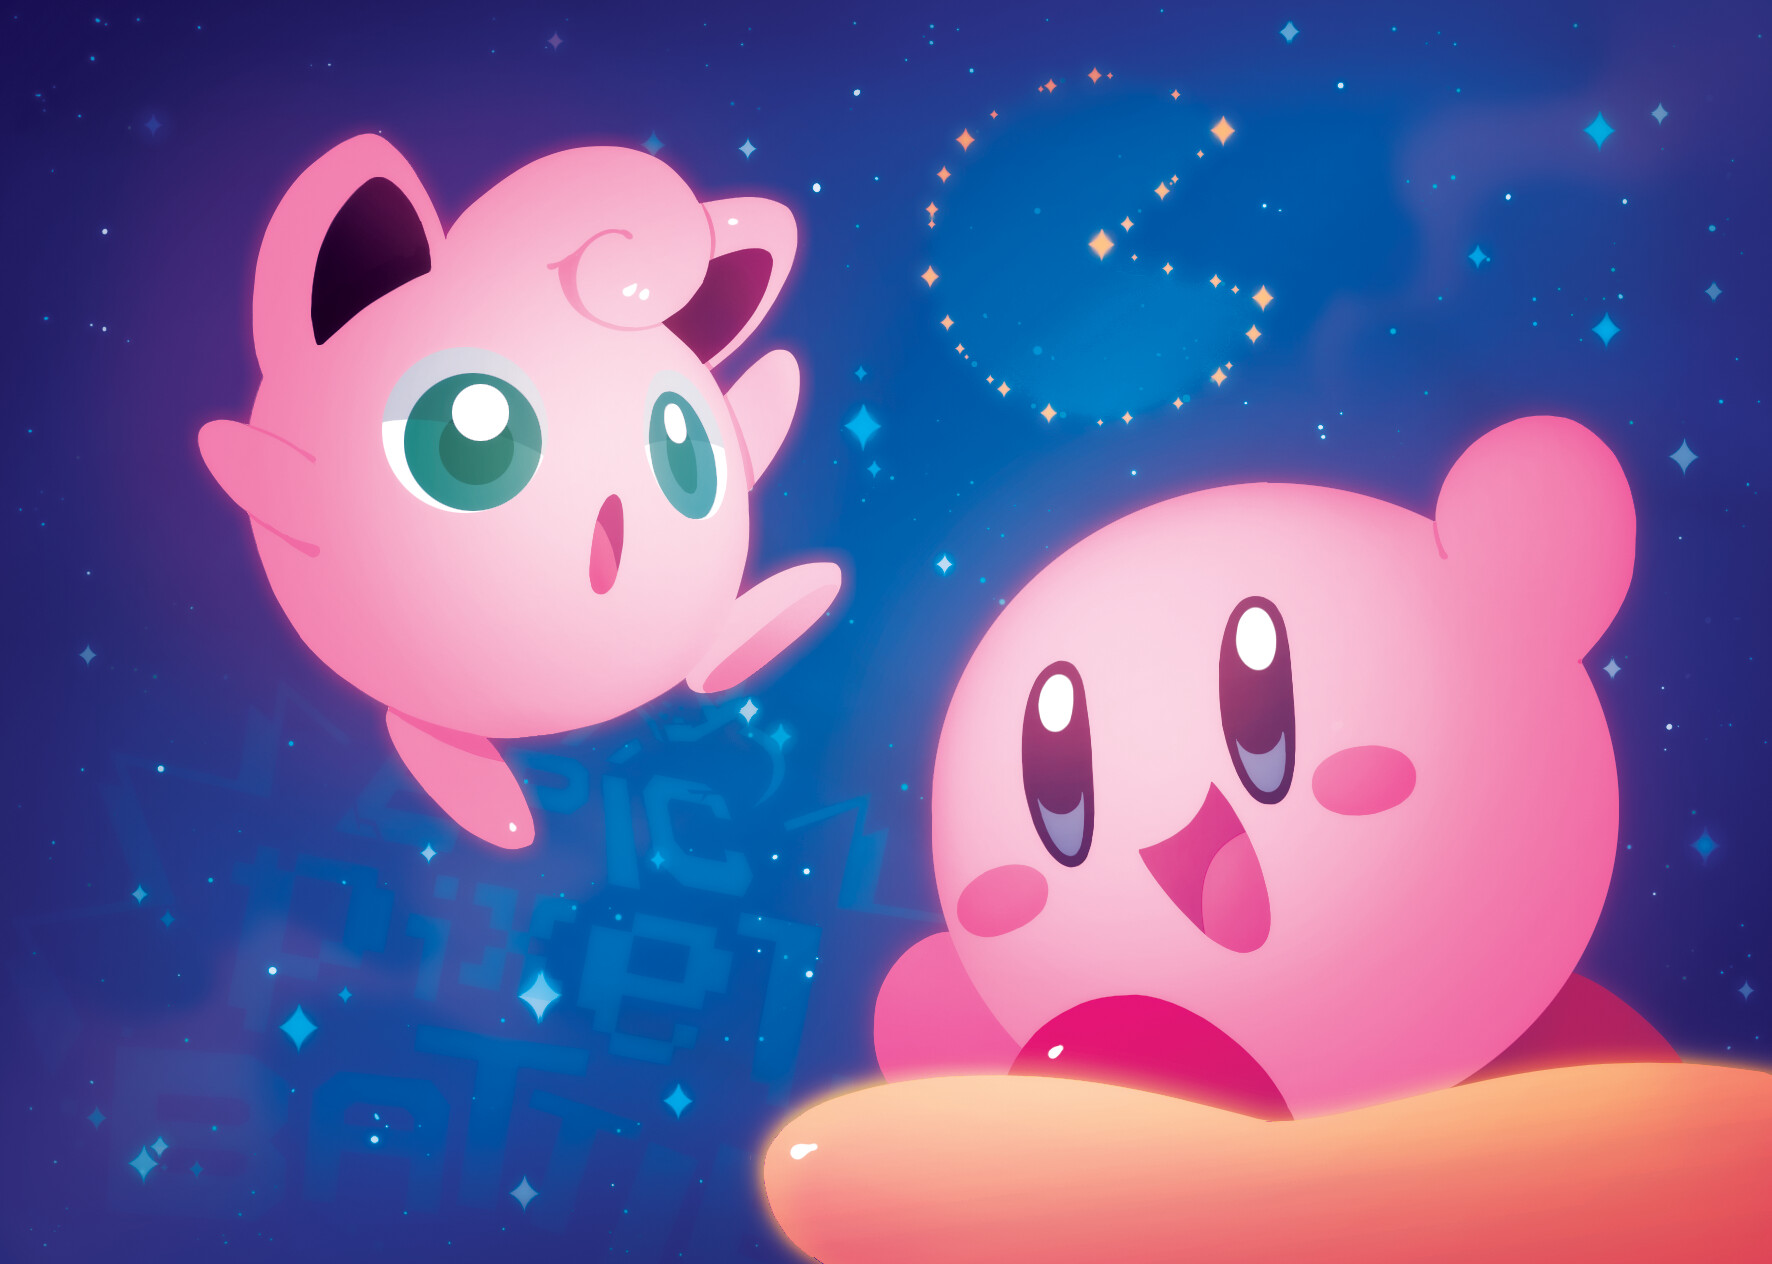 ArtStation - Kirby & Jigglypuff